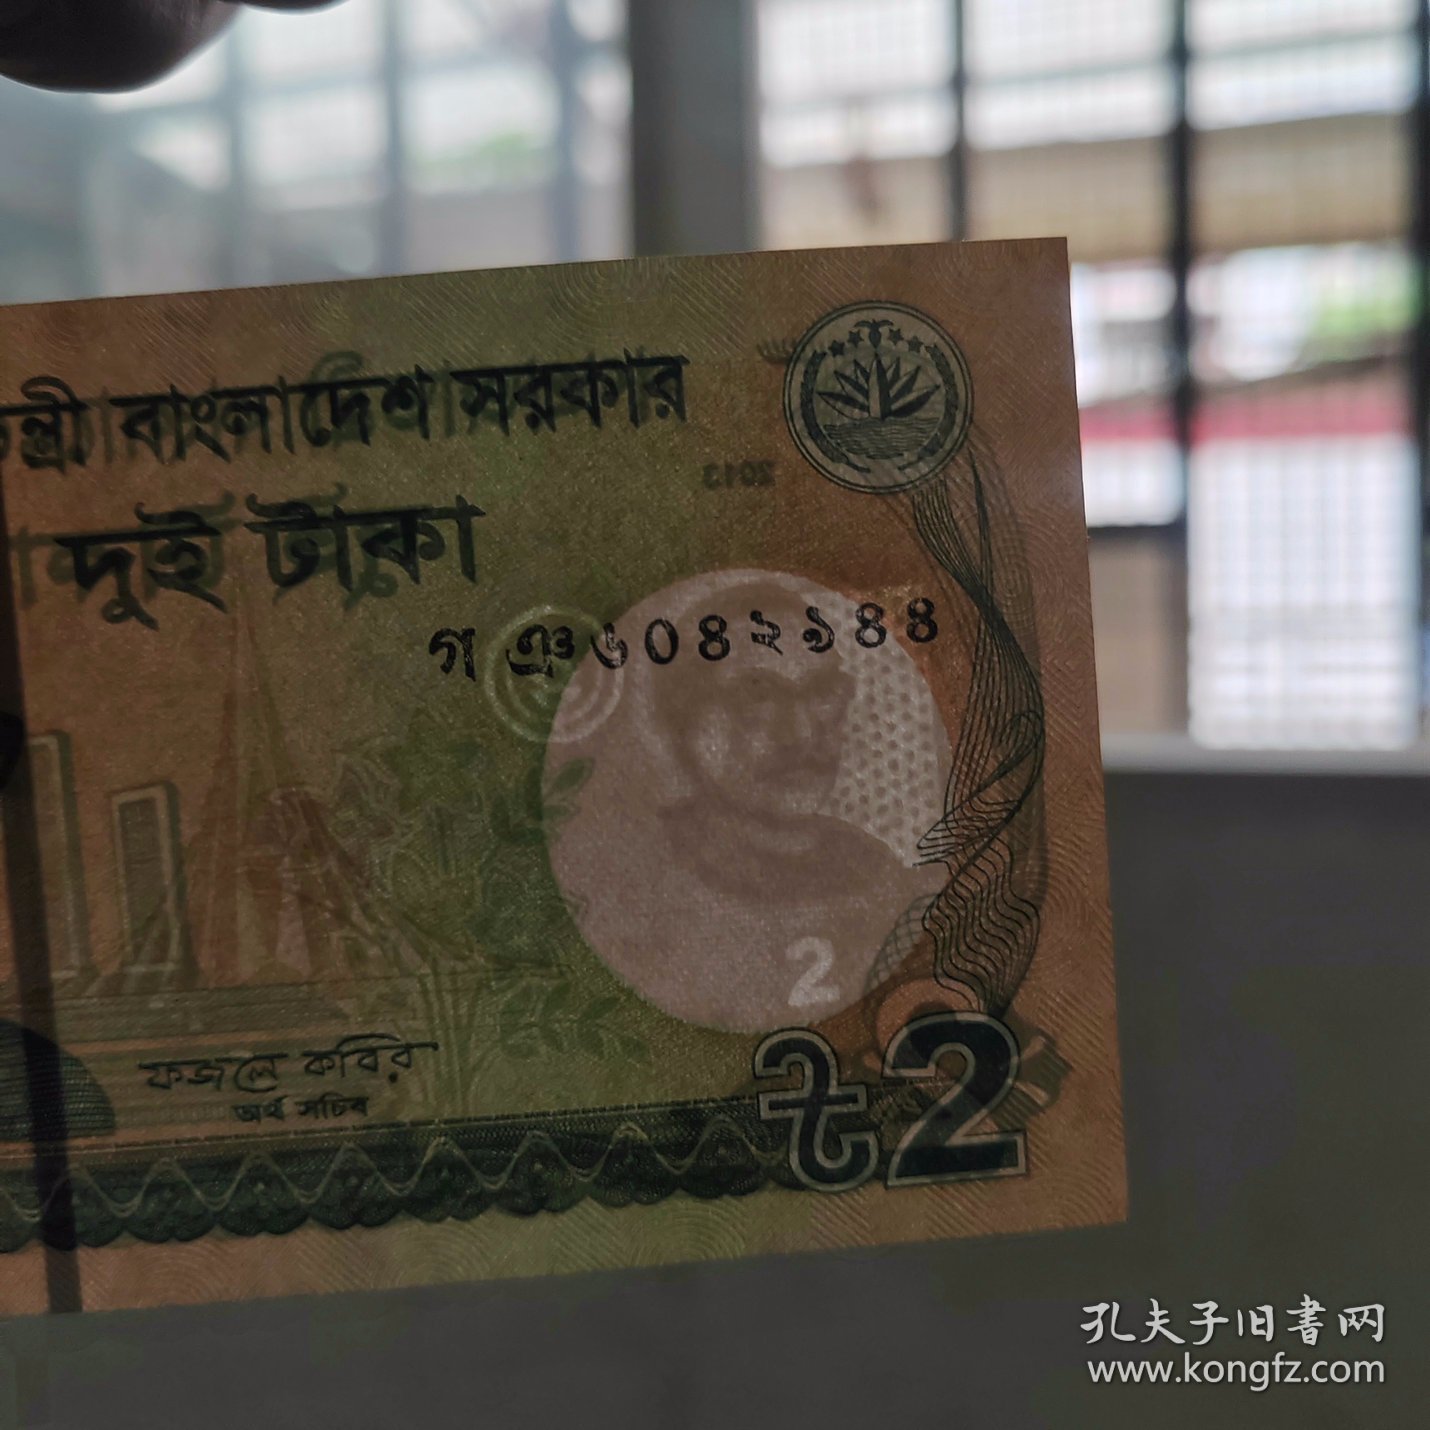 老钱币：孟加拉国2塔卡纸币一张